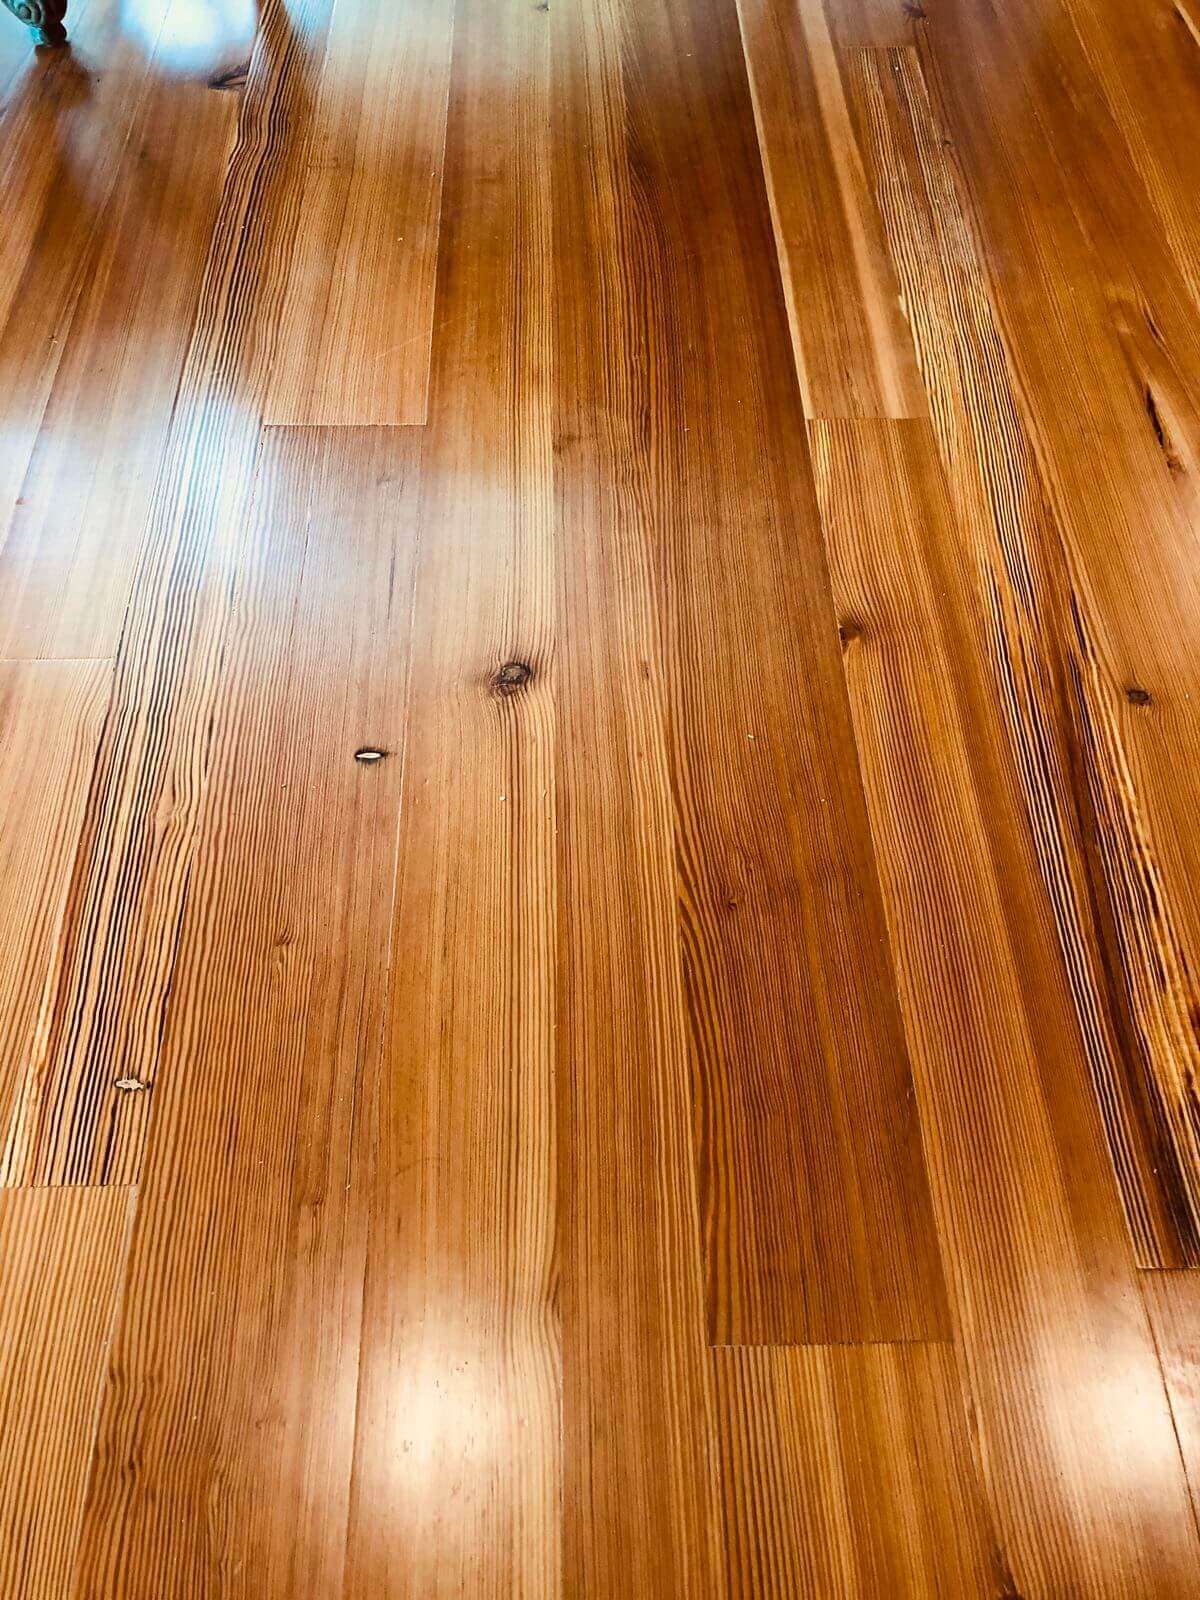 Classic hardwood flooring.